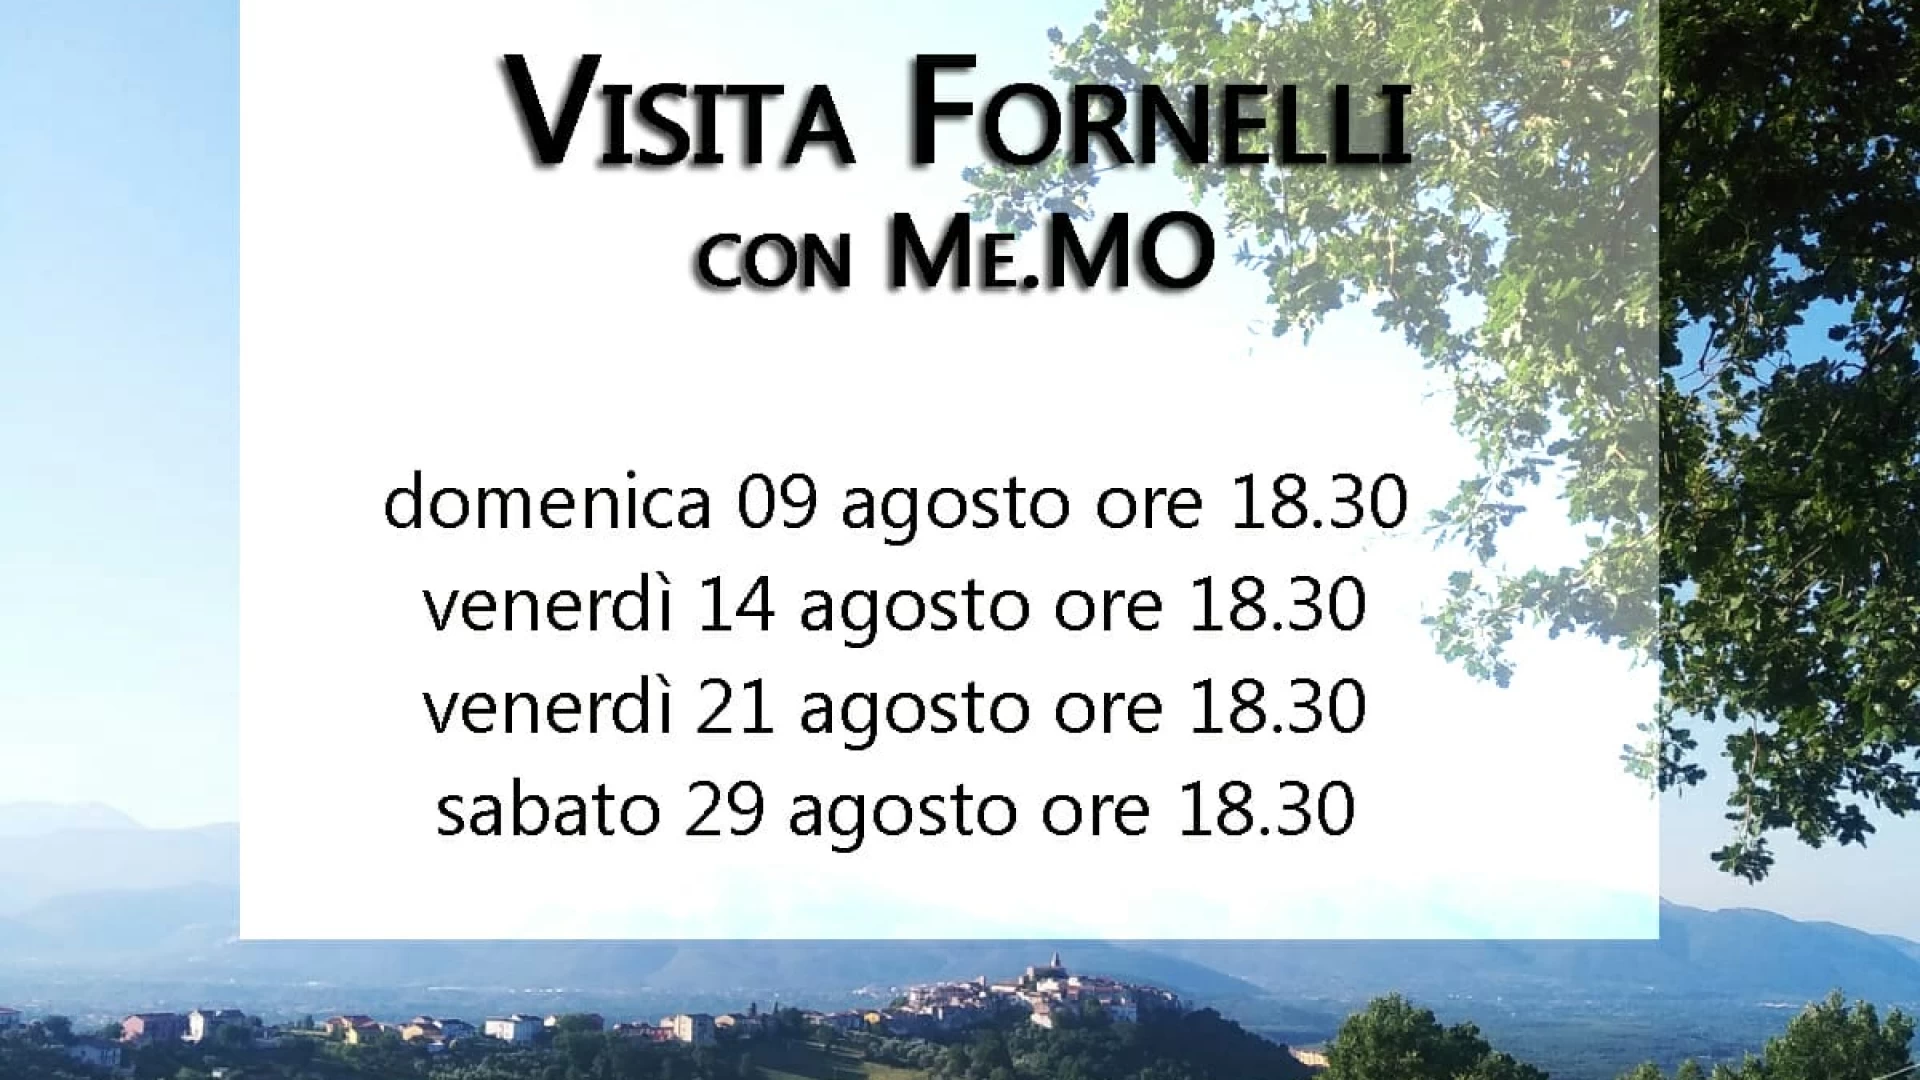 Fornelli: riprendono le visite al Borgo Medievale con ME.MO. Cantieri Culturali.